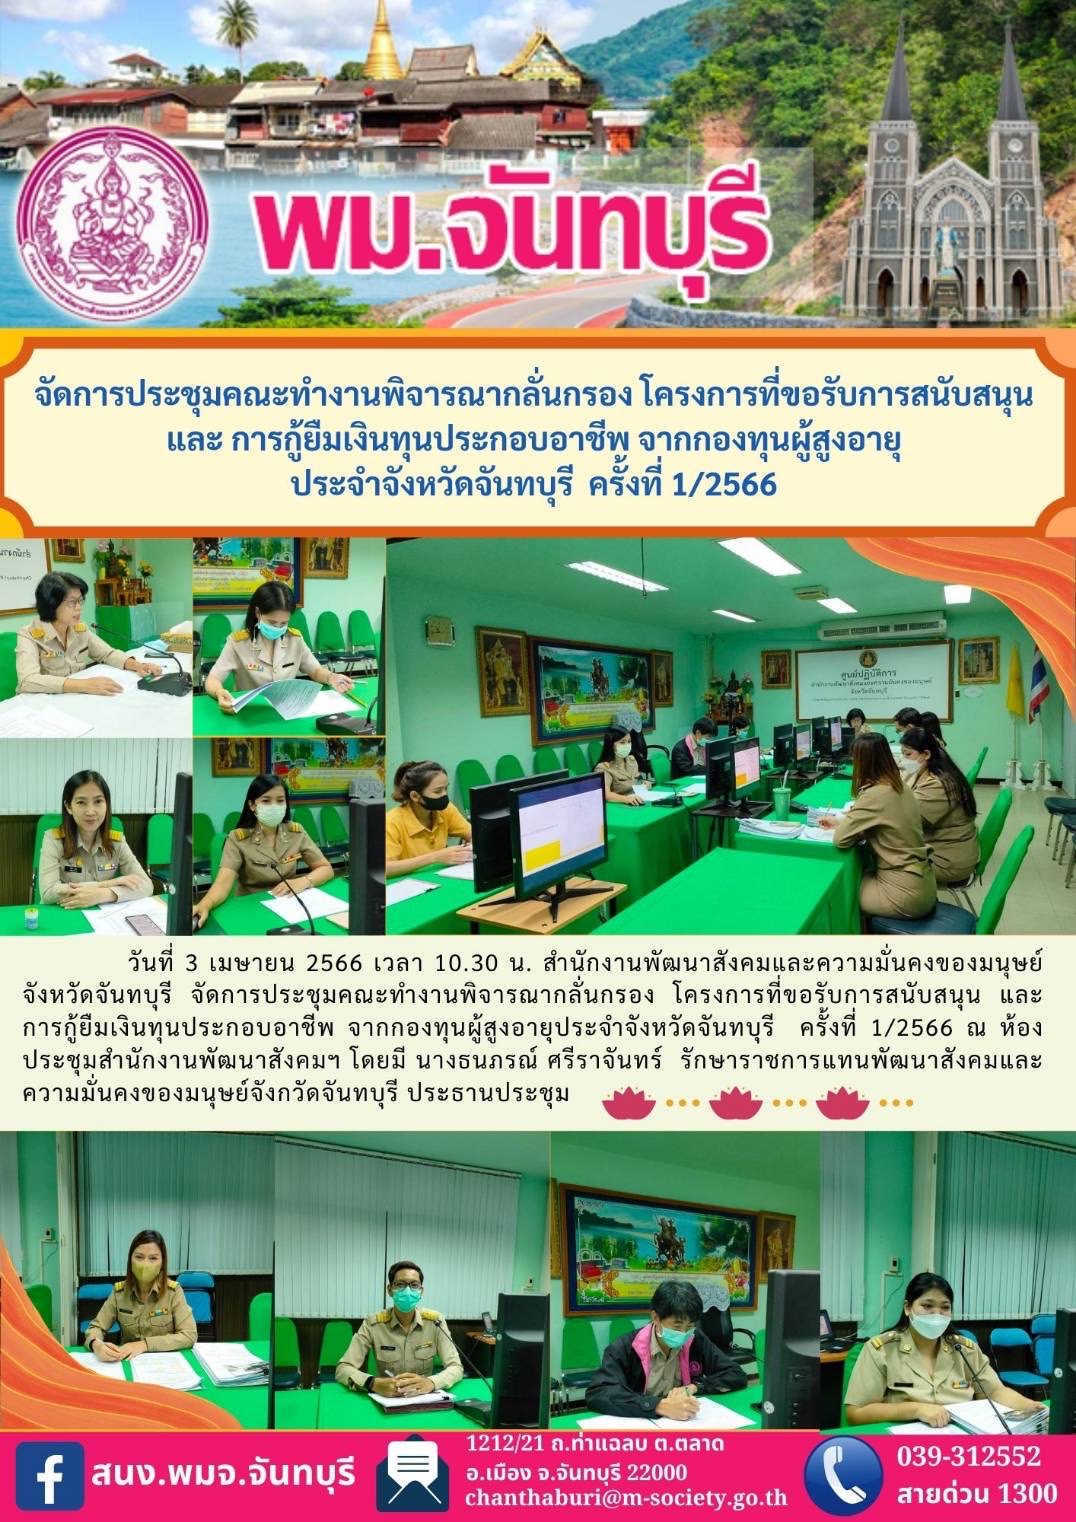 พม.จันทบุรี จัดประชุมคณะทำงานพิจารณากลั่นกรองโครงการที่ขอรับการสนับสนุนและการกู้ยืมเงินทุนประกอบอาชีพผู้สูงอายุ ประจำจังหวัดจันทบุรี ครั้งที่ 1/2566